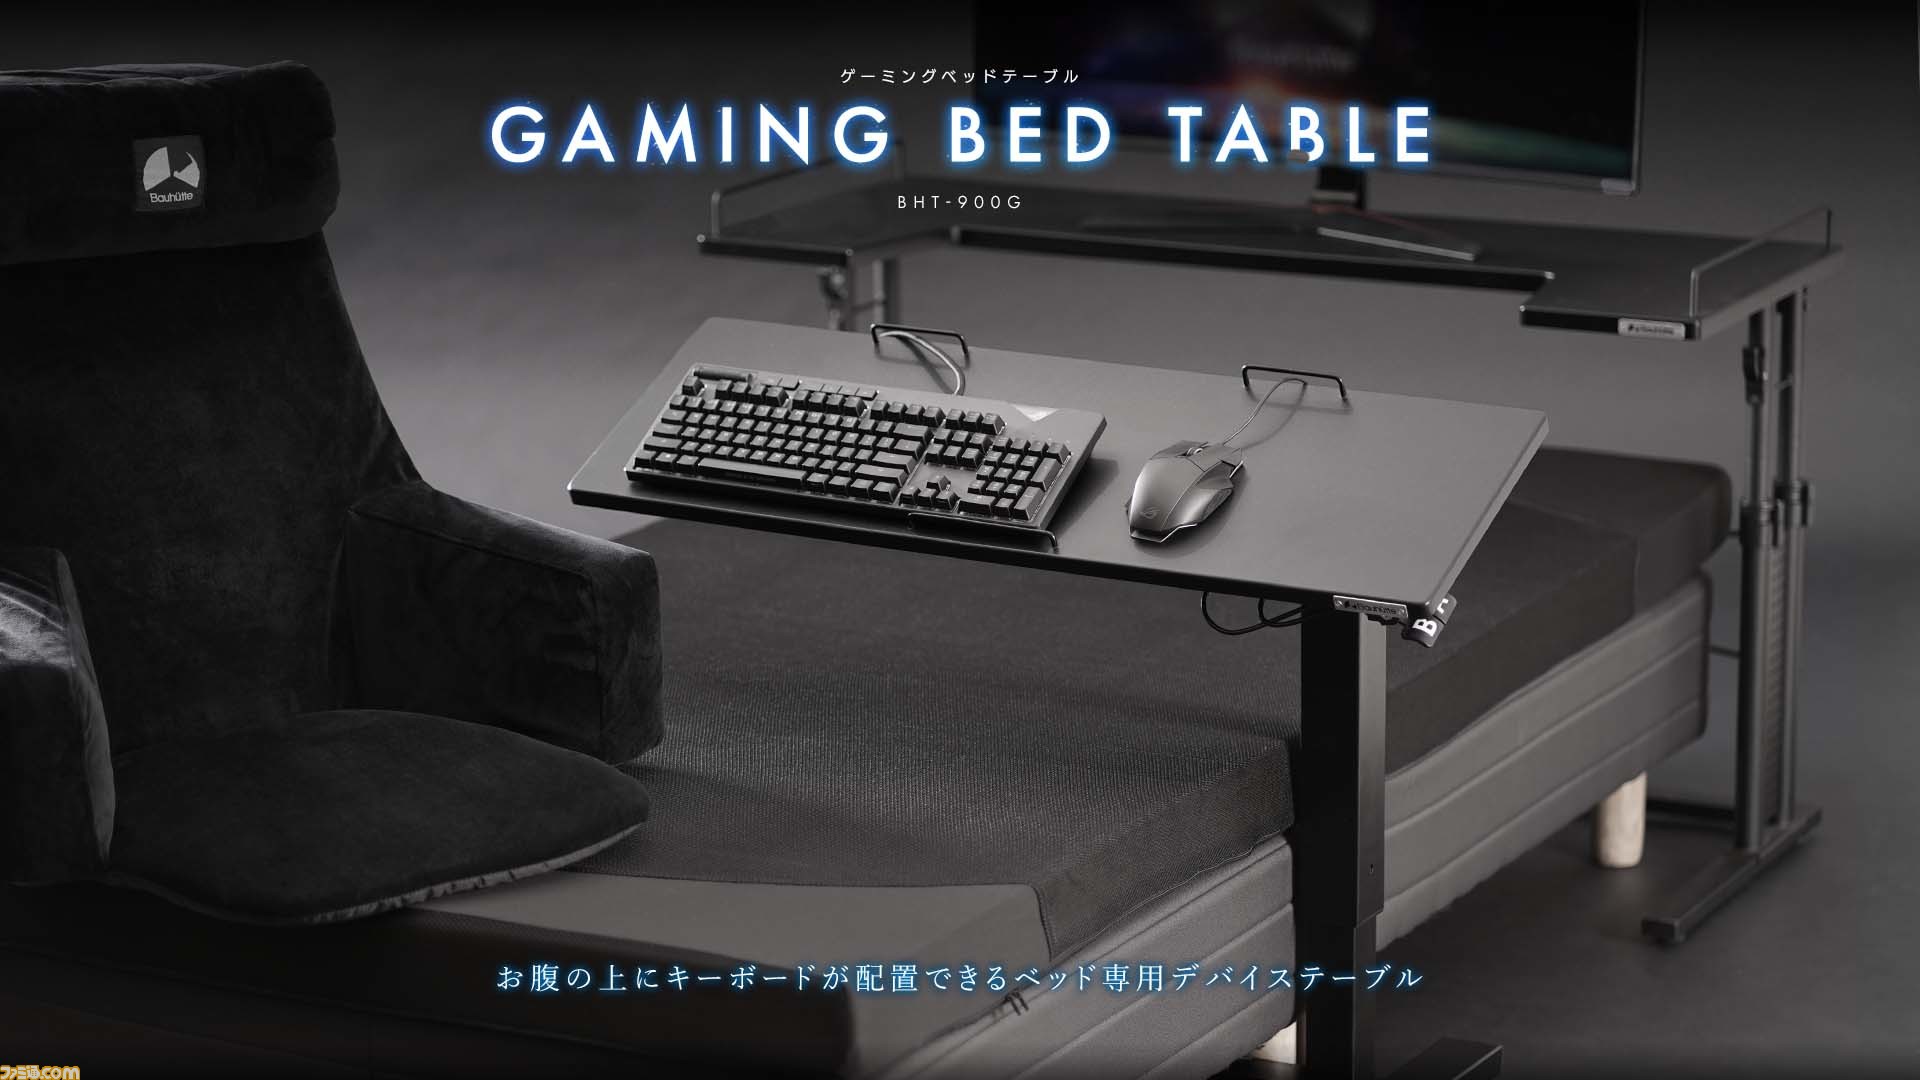 ベッドでゲームが捗るキーボードテーブルが発売。高さと角度を調節して